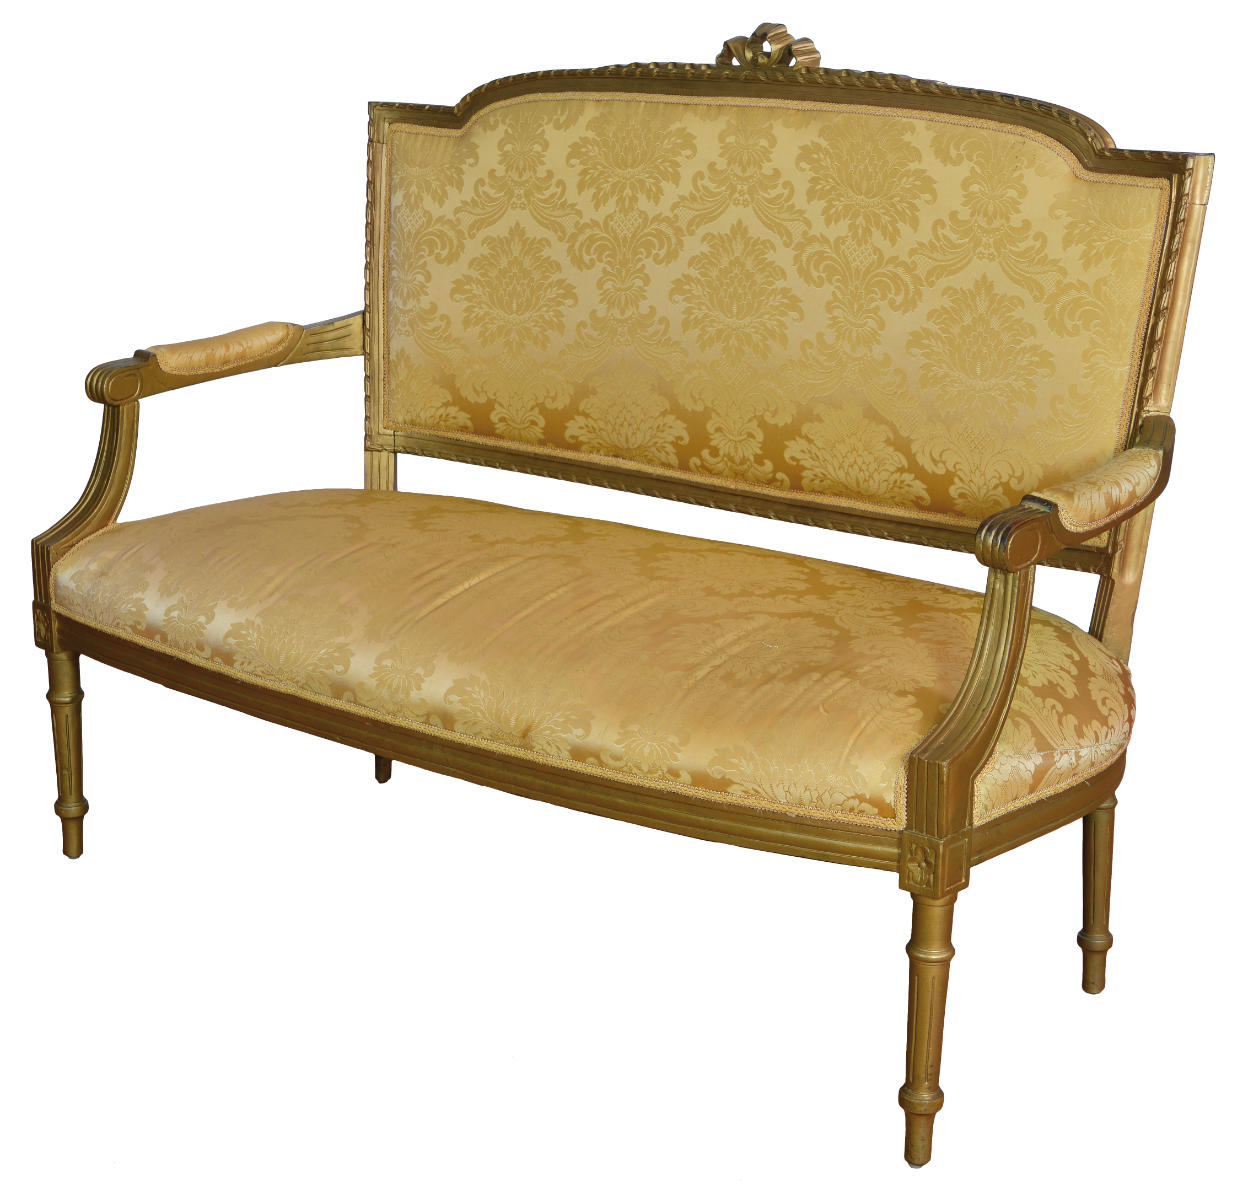 Bänkchen im Louis XVI Stil, Sofa, handgeschnitzt, mit Gold berieben, cremefarbender Stoff, Frontalansicht.